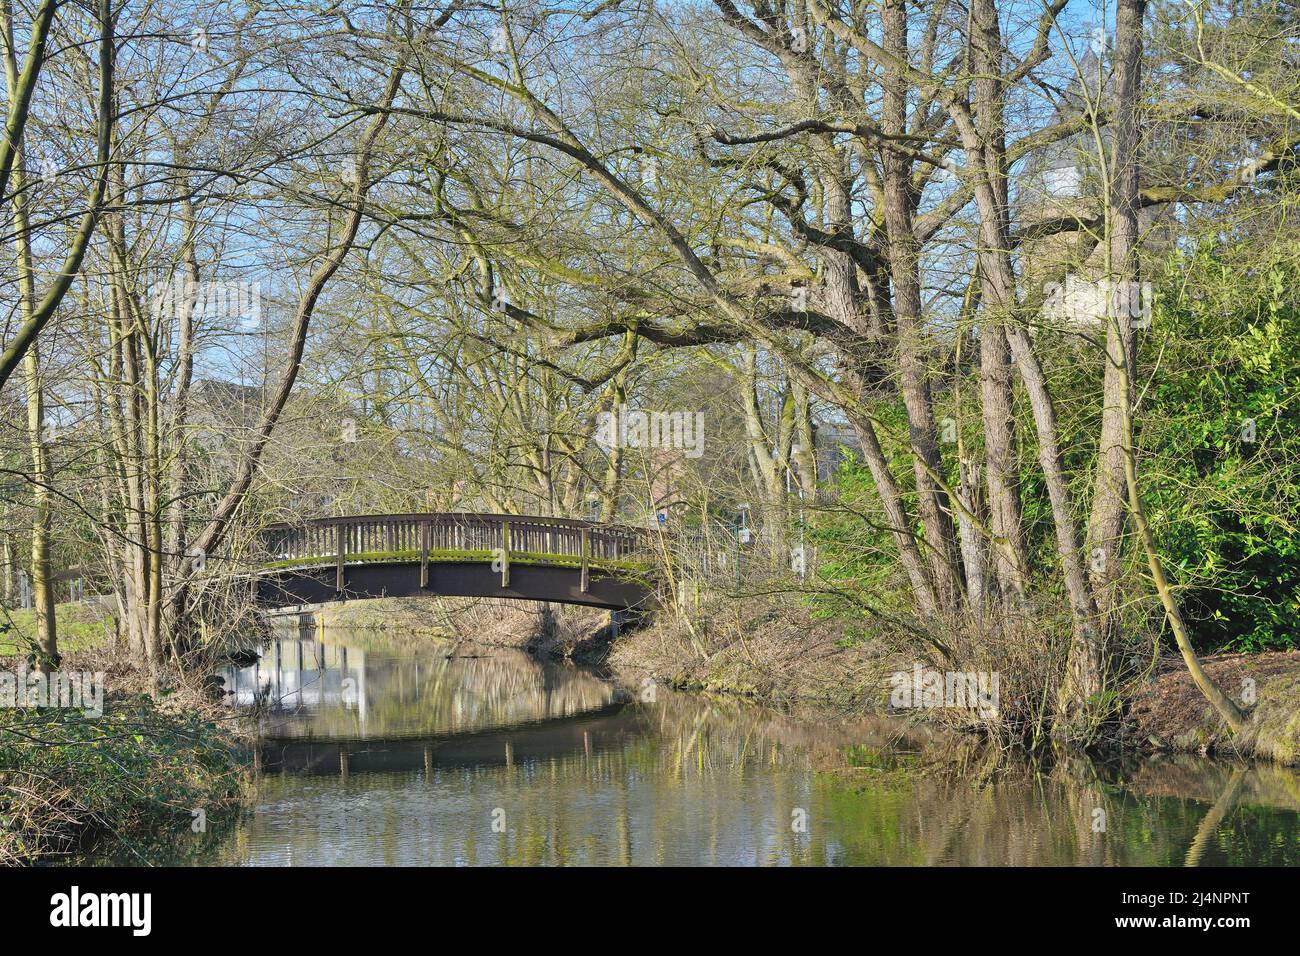 River Schwalm in Brueggen,lower Rhine region,Germany Stock Photo